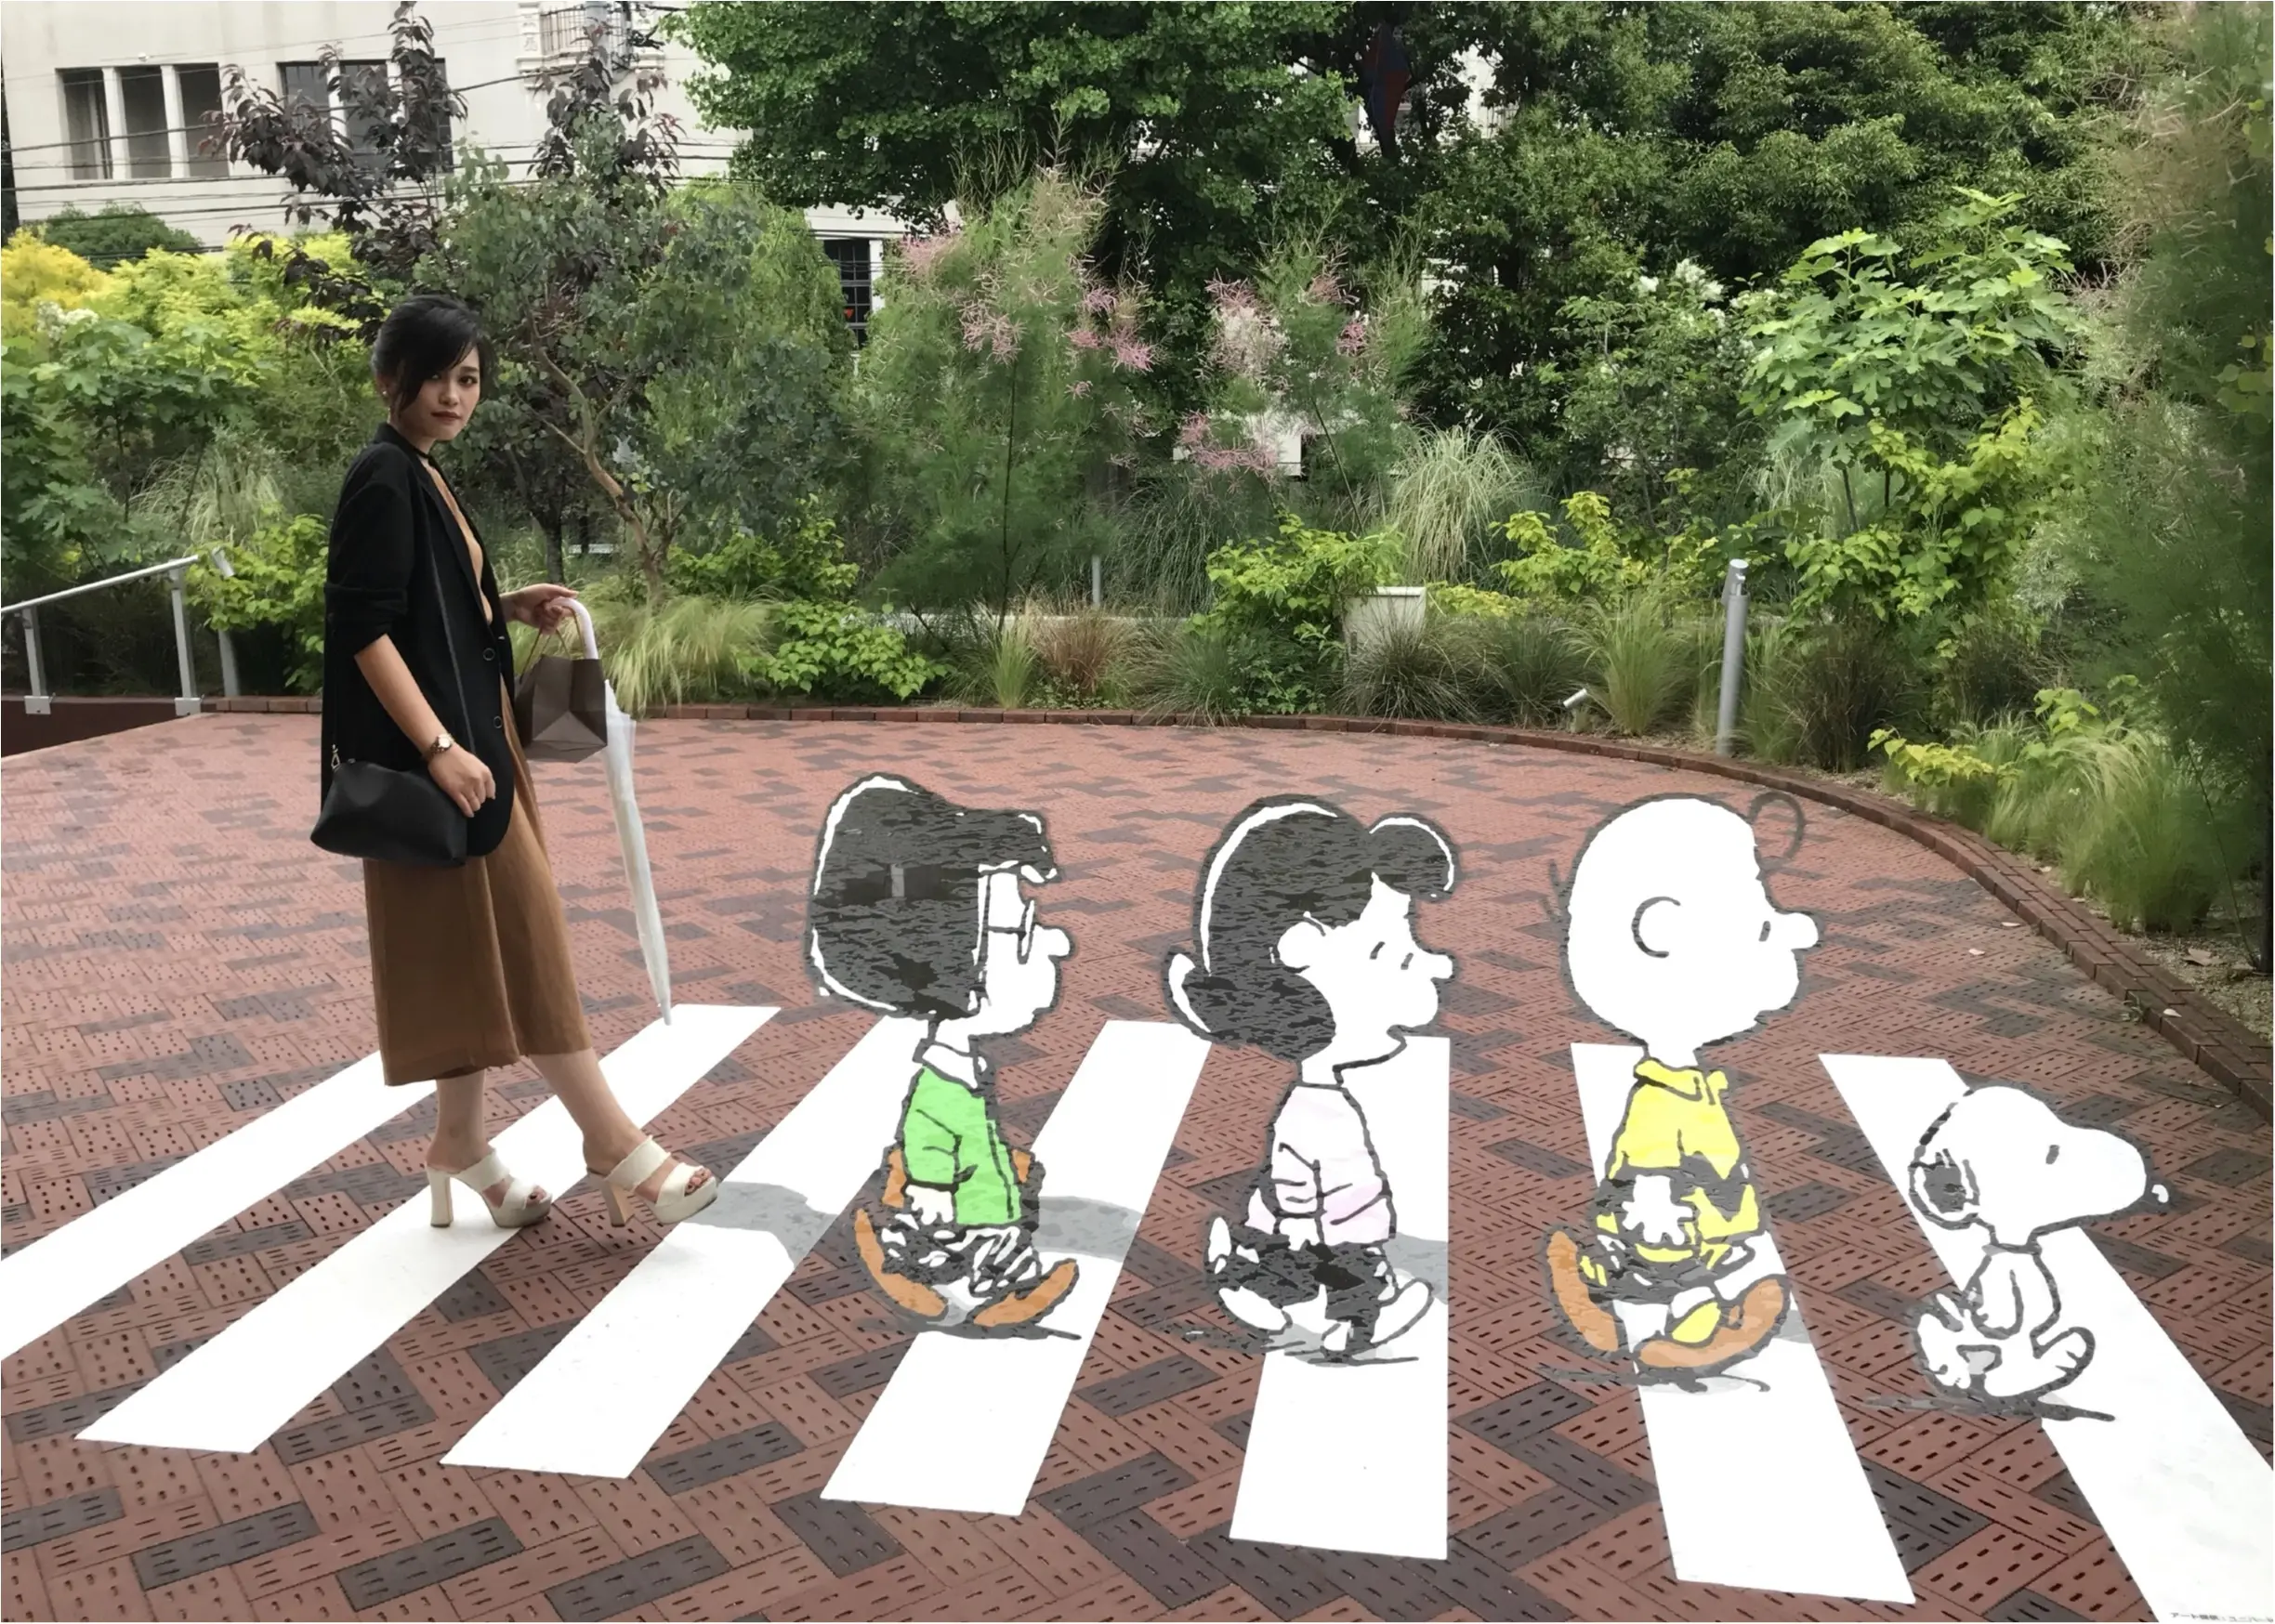 六本木 雨の日のお出かけ展覧会 Snoopy Museum Tokyo いよいよ最終回 Moreインフルエンサーズブログ Daily More